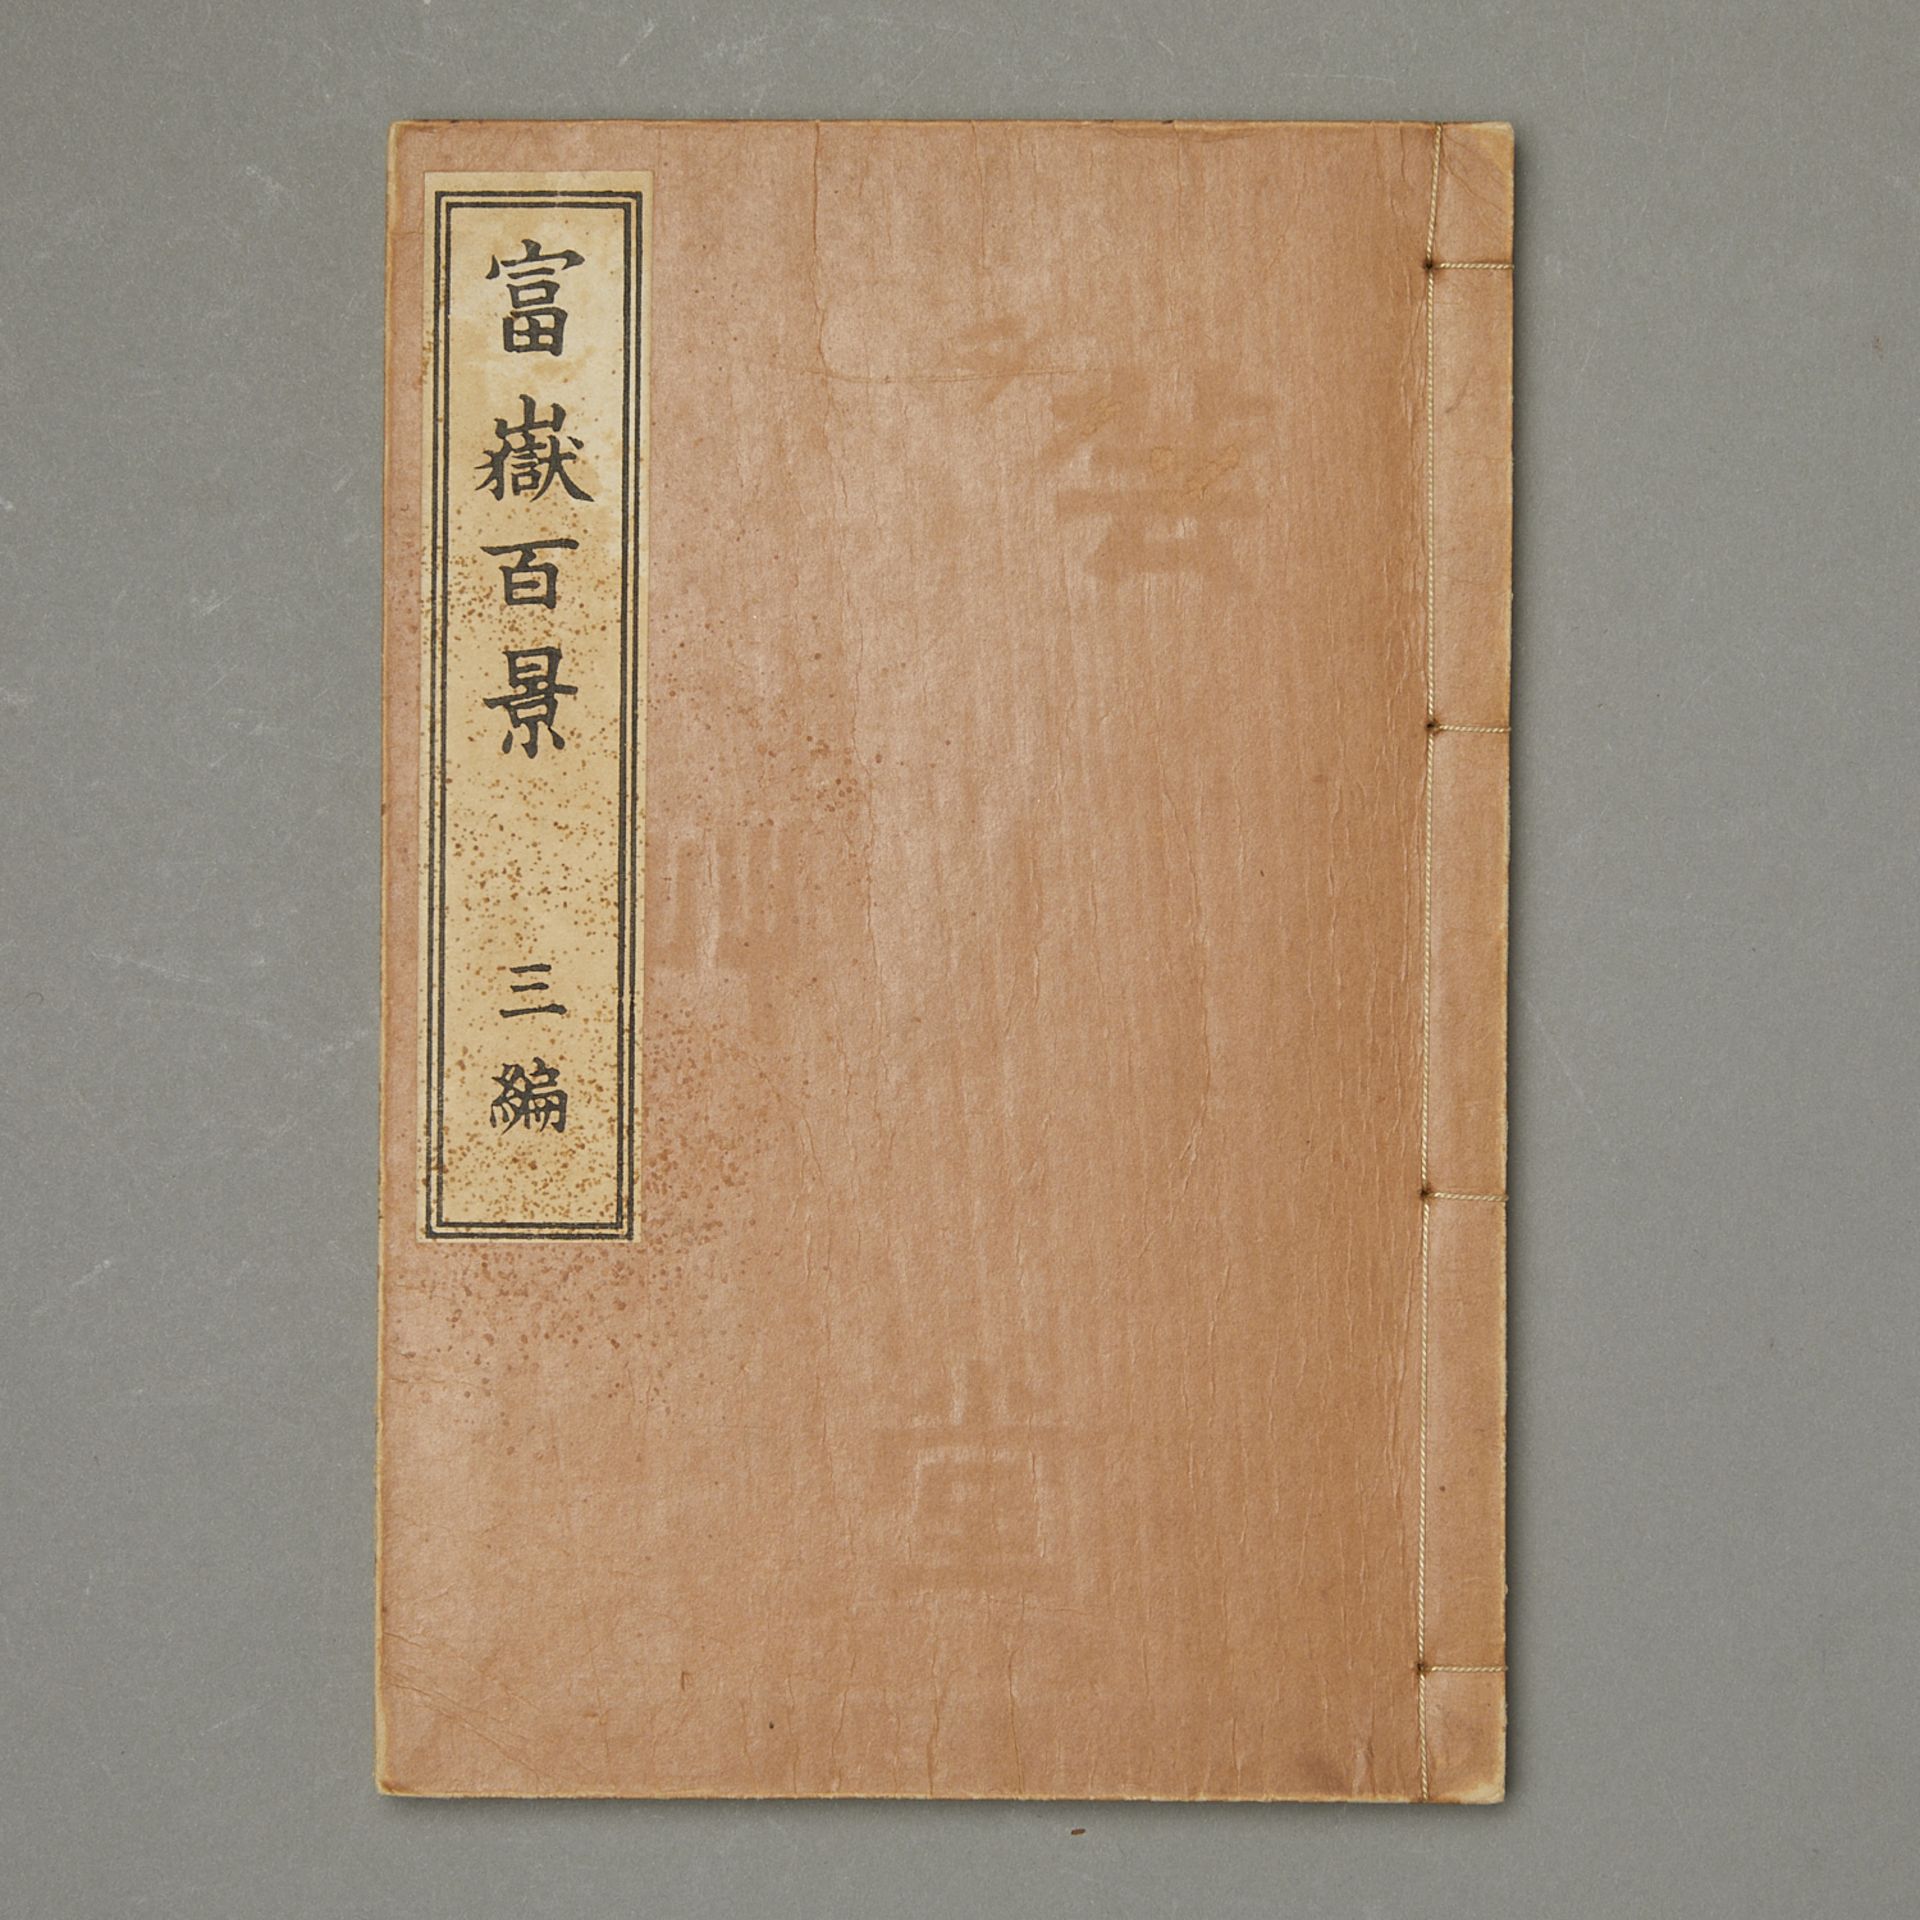 5 Vintage Books on Japanese Woodblocks - Bild 3 aus 20